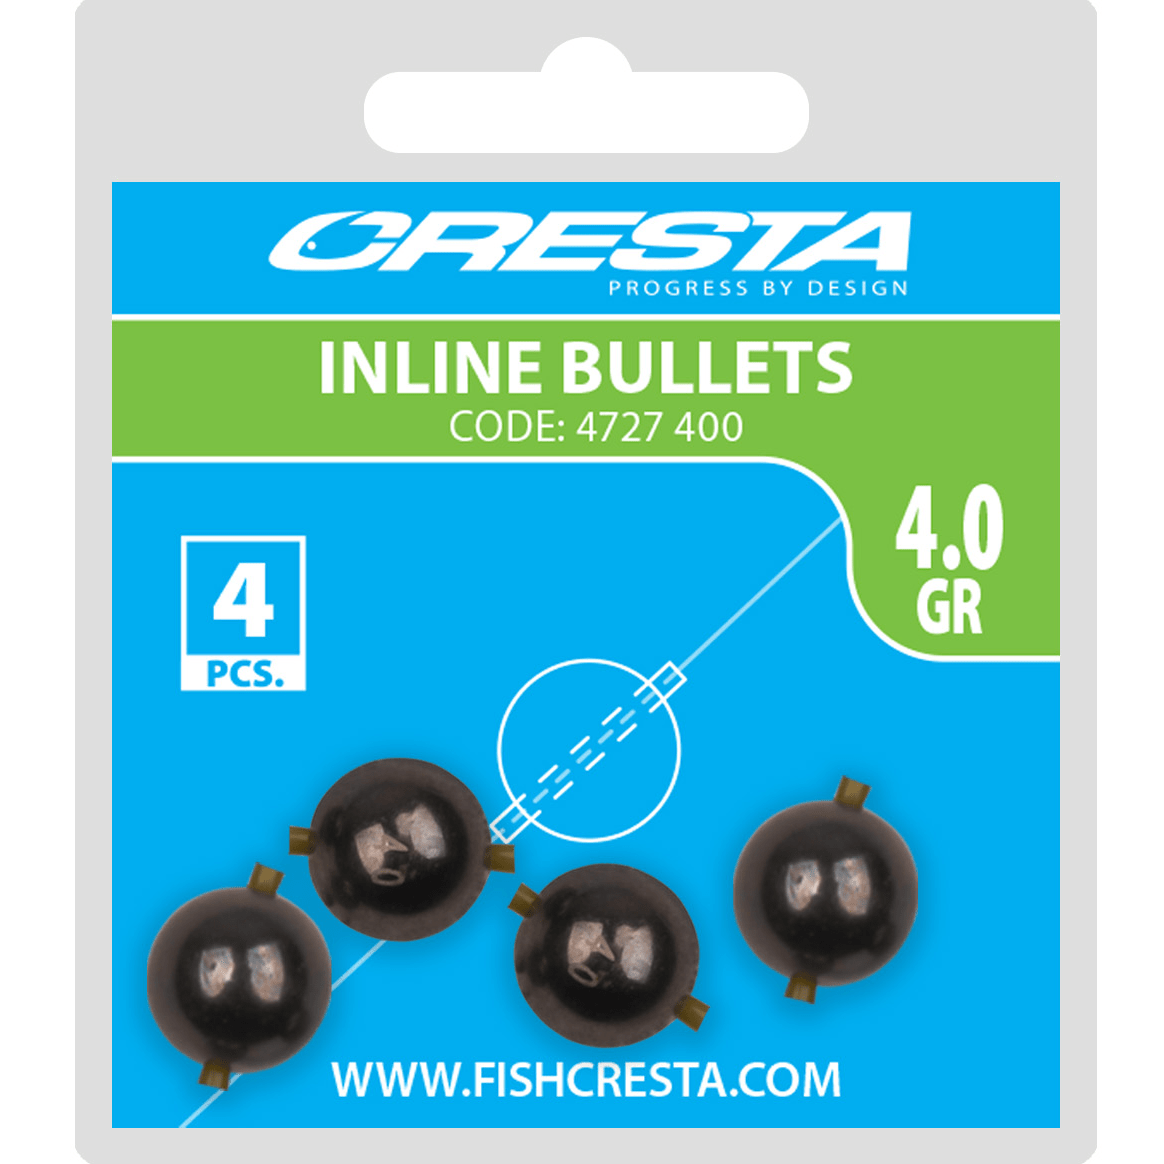 Cresta inline bullets